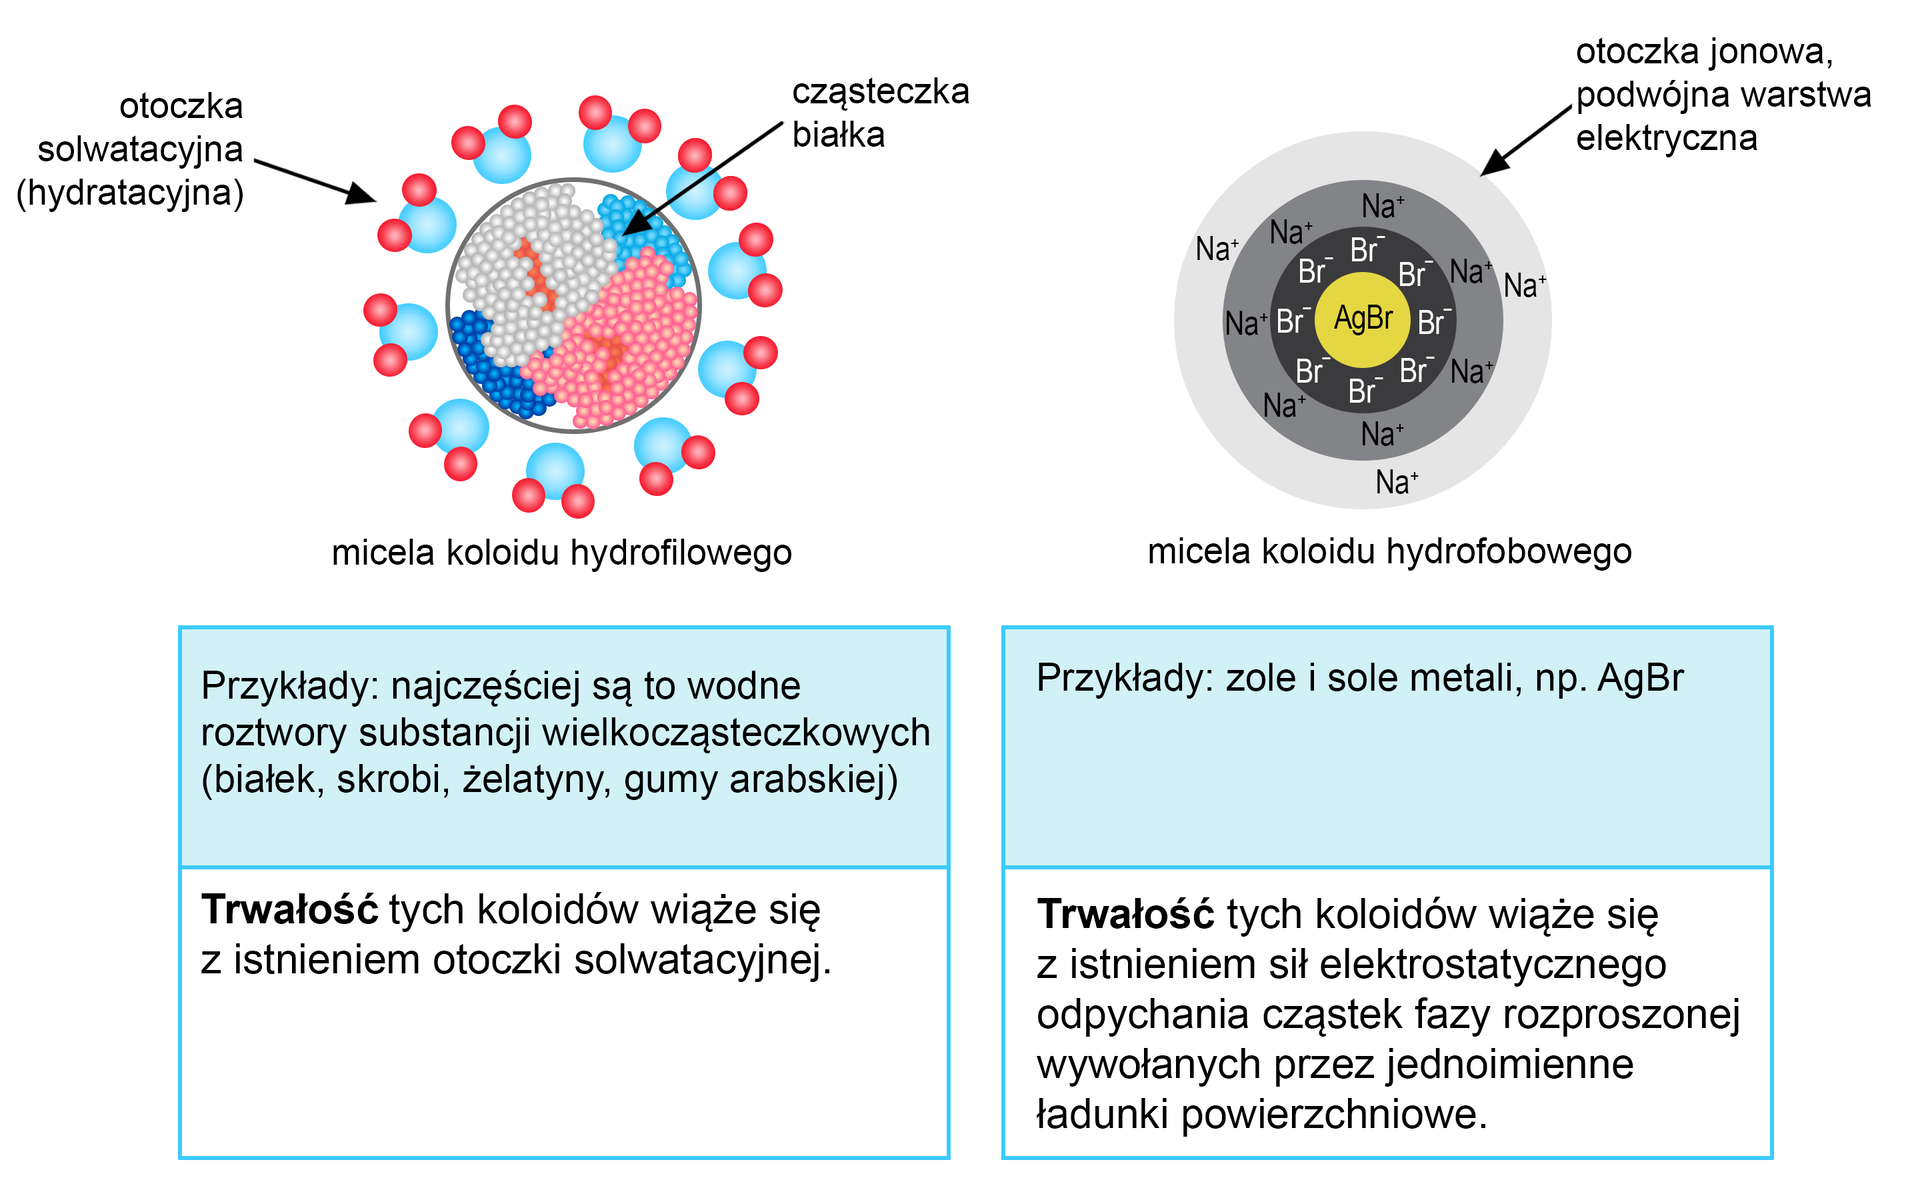 Ilustracja przedstawia przykłady roztworów koloidalnych. Po lewej stronie ilustracji jest micela koloidu hydrofilowego. Jest okrągła, to cząsteczka białka. Otoczona jest okręgiem zbudowanym z niebieskich kulek połączonych z dwiema czerwonymi kulkami - to otoczka solwatacyjna (hydratacyjna). Przykłady: najczęściej są to wodne roztwory substancji wielkocząsteczkowych - białek, skrobi, żelatyny, gumy arabskiej. Trwałość tych koloidów wiąże się z istnieniem otoczki solwatacyjnej. Obok opisanej miceli jest micela koloidu hydrofobowego. To cząsteczka AgBr. Wokół żółtego jądra są aniony bromu, a następnie kationy sodu. Okręgi otaczające jądro opisano jako otoczkę jonową, podwójną warstwę elektryczną. Przykłady: zole i sole metali, na przykład AgBr. Trwałość tych koloidów wiąże się z istnieniem sił elektrostatycznego odpychania cząstek fazy rozproszonej wywołanych przez jednoimienne ładunki powierzchniowe.     